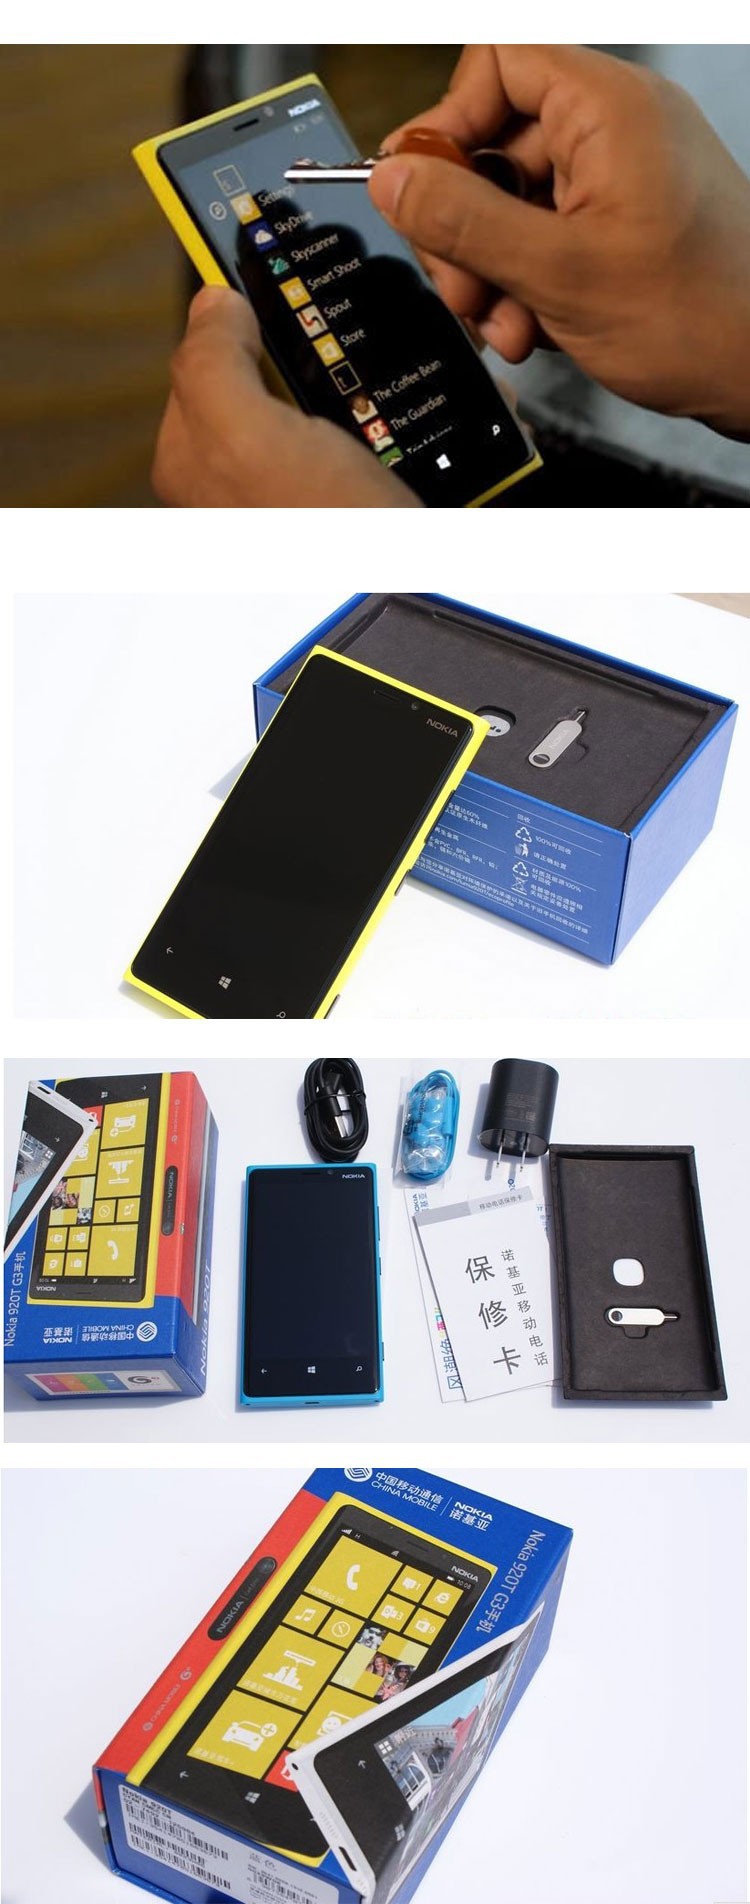 Nokia-lumia-920